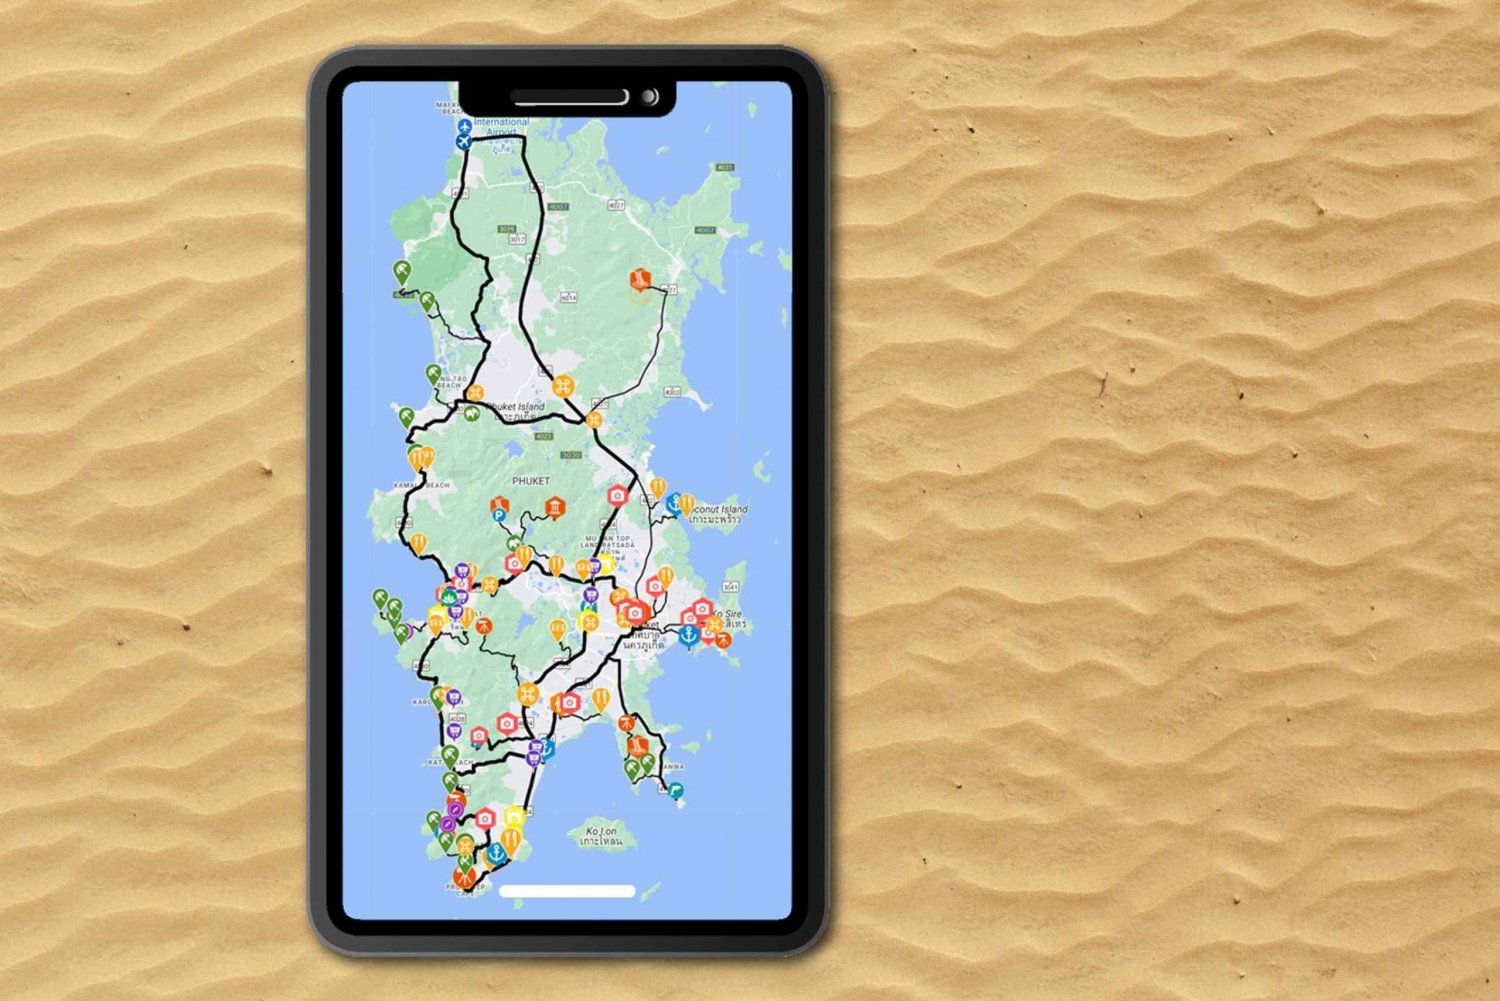 Phuket: Aplikacja przewodnika eksploracji wyspy z treściami offline